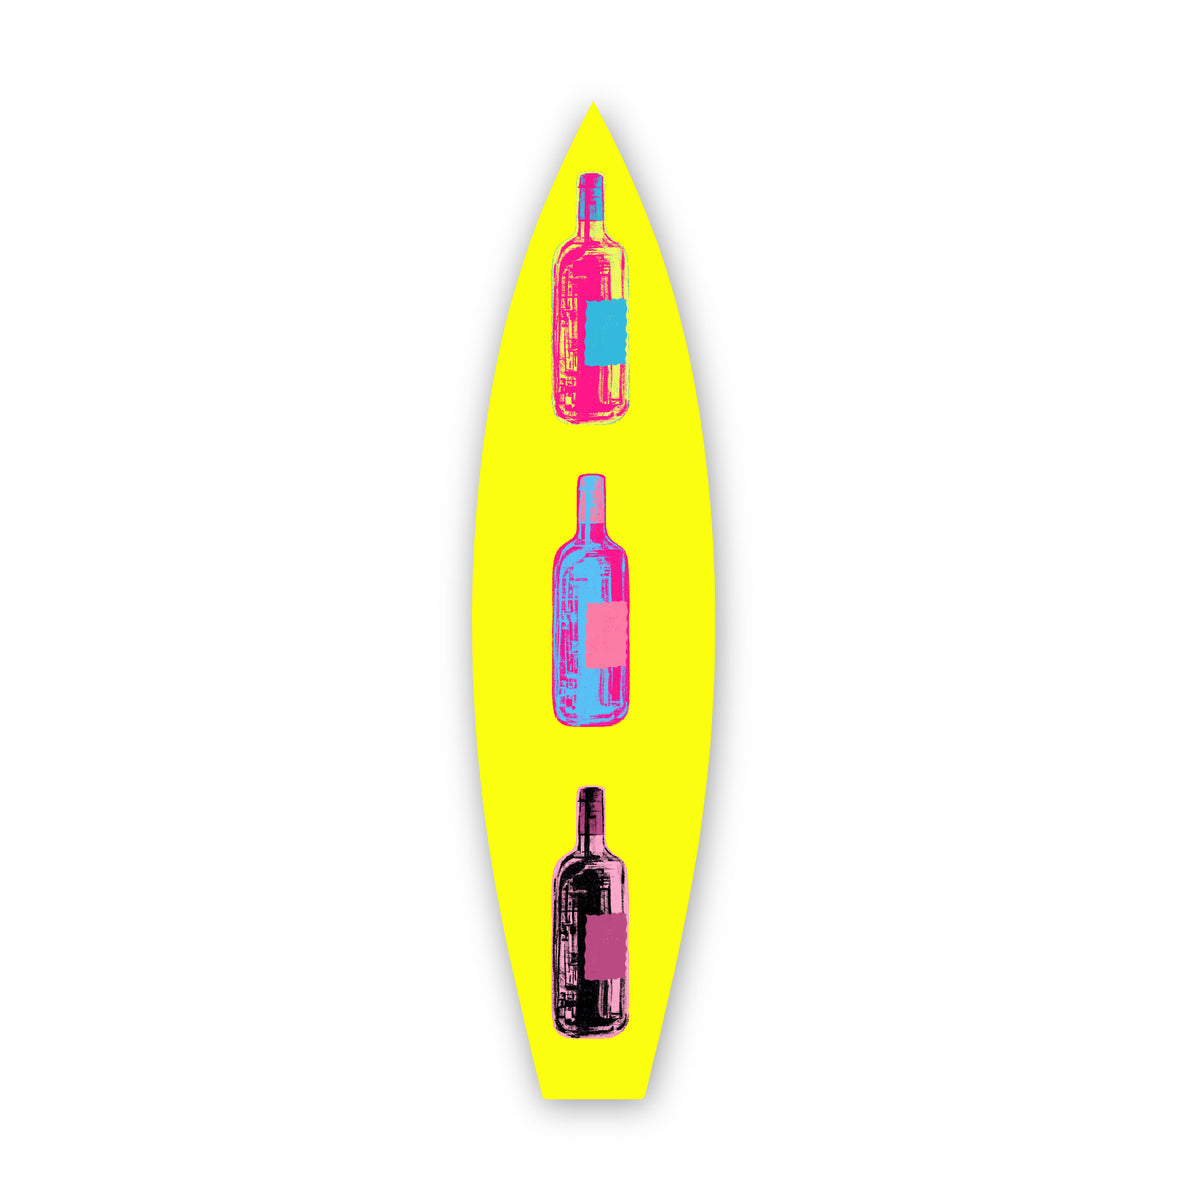 Retro Bottle - Surfboard Art